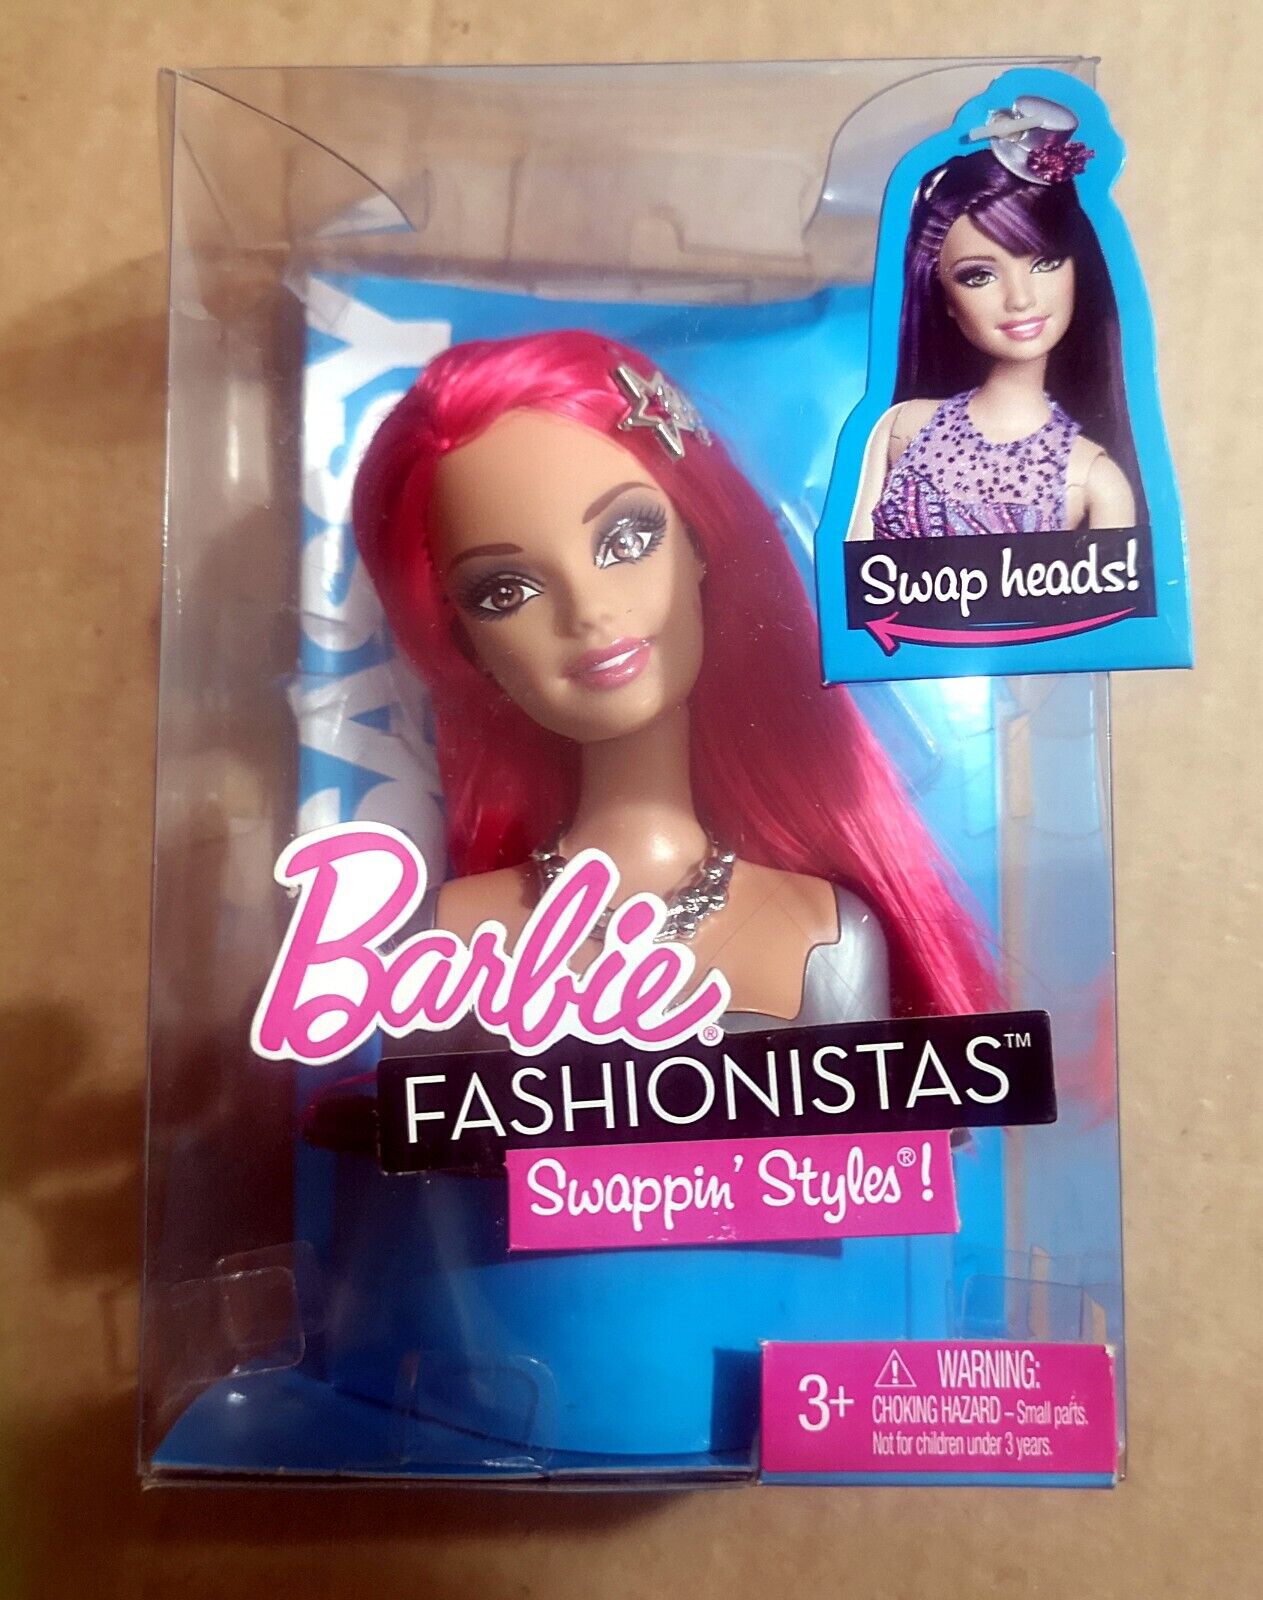 Barbie Fashionistas Swappin' Styles (Sassy) Fashionistas Barbie Doll Head Barbie